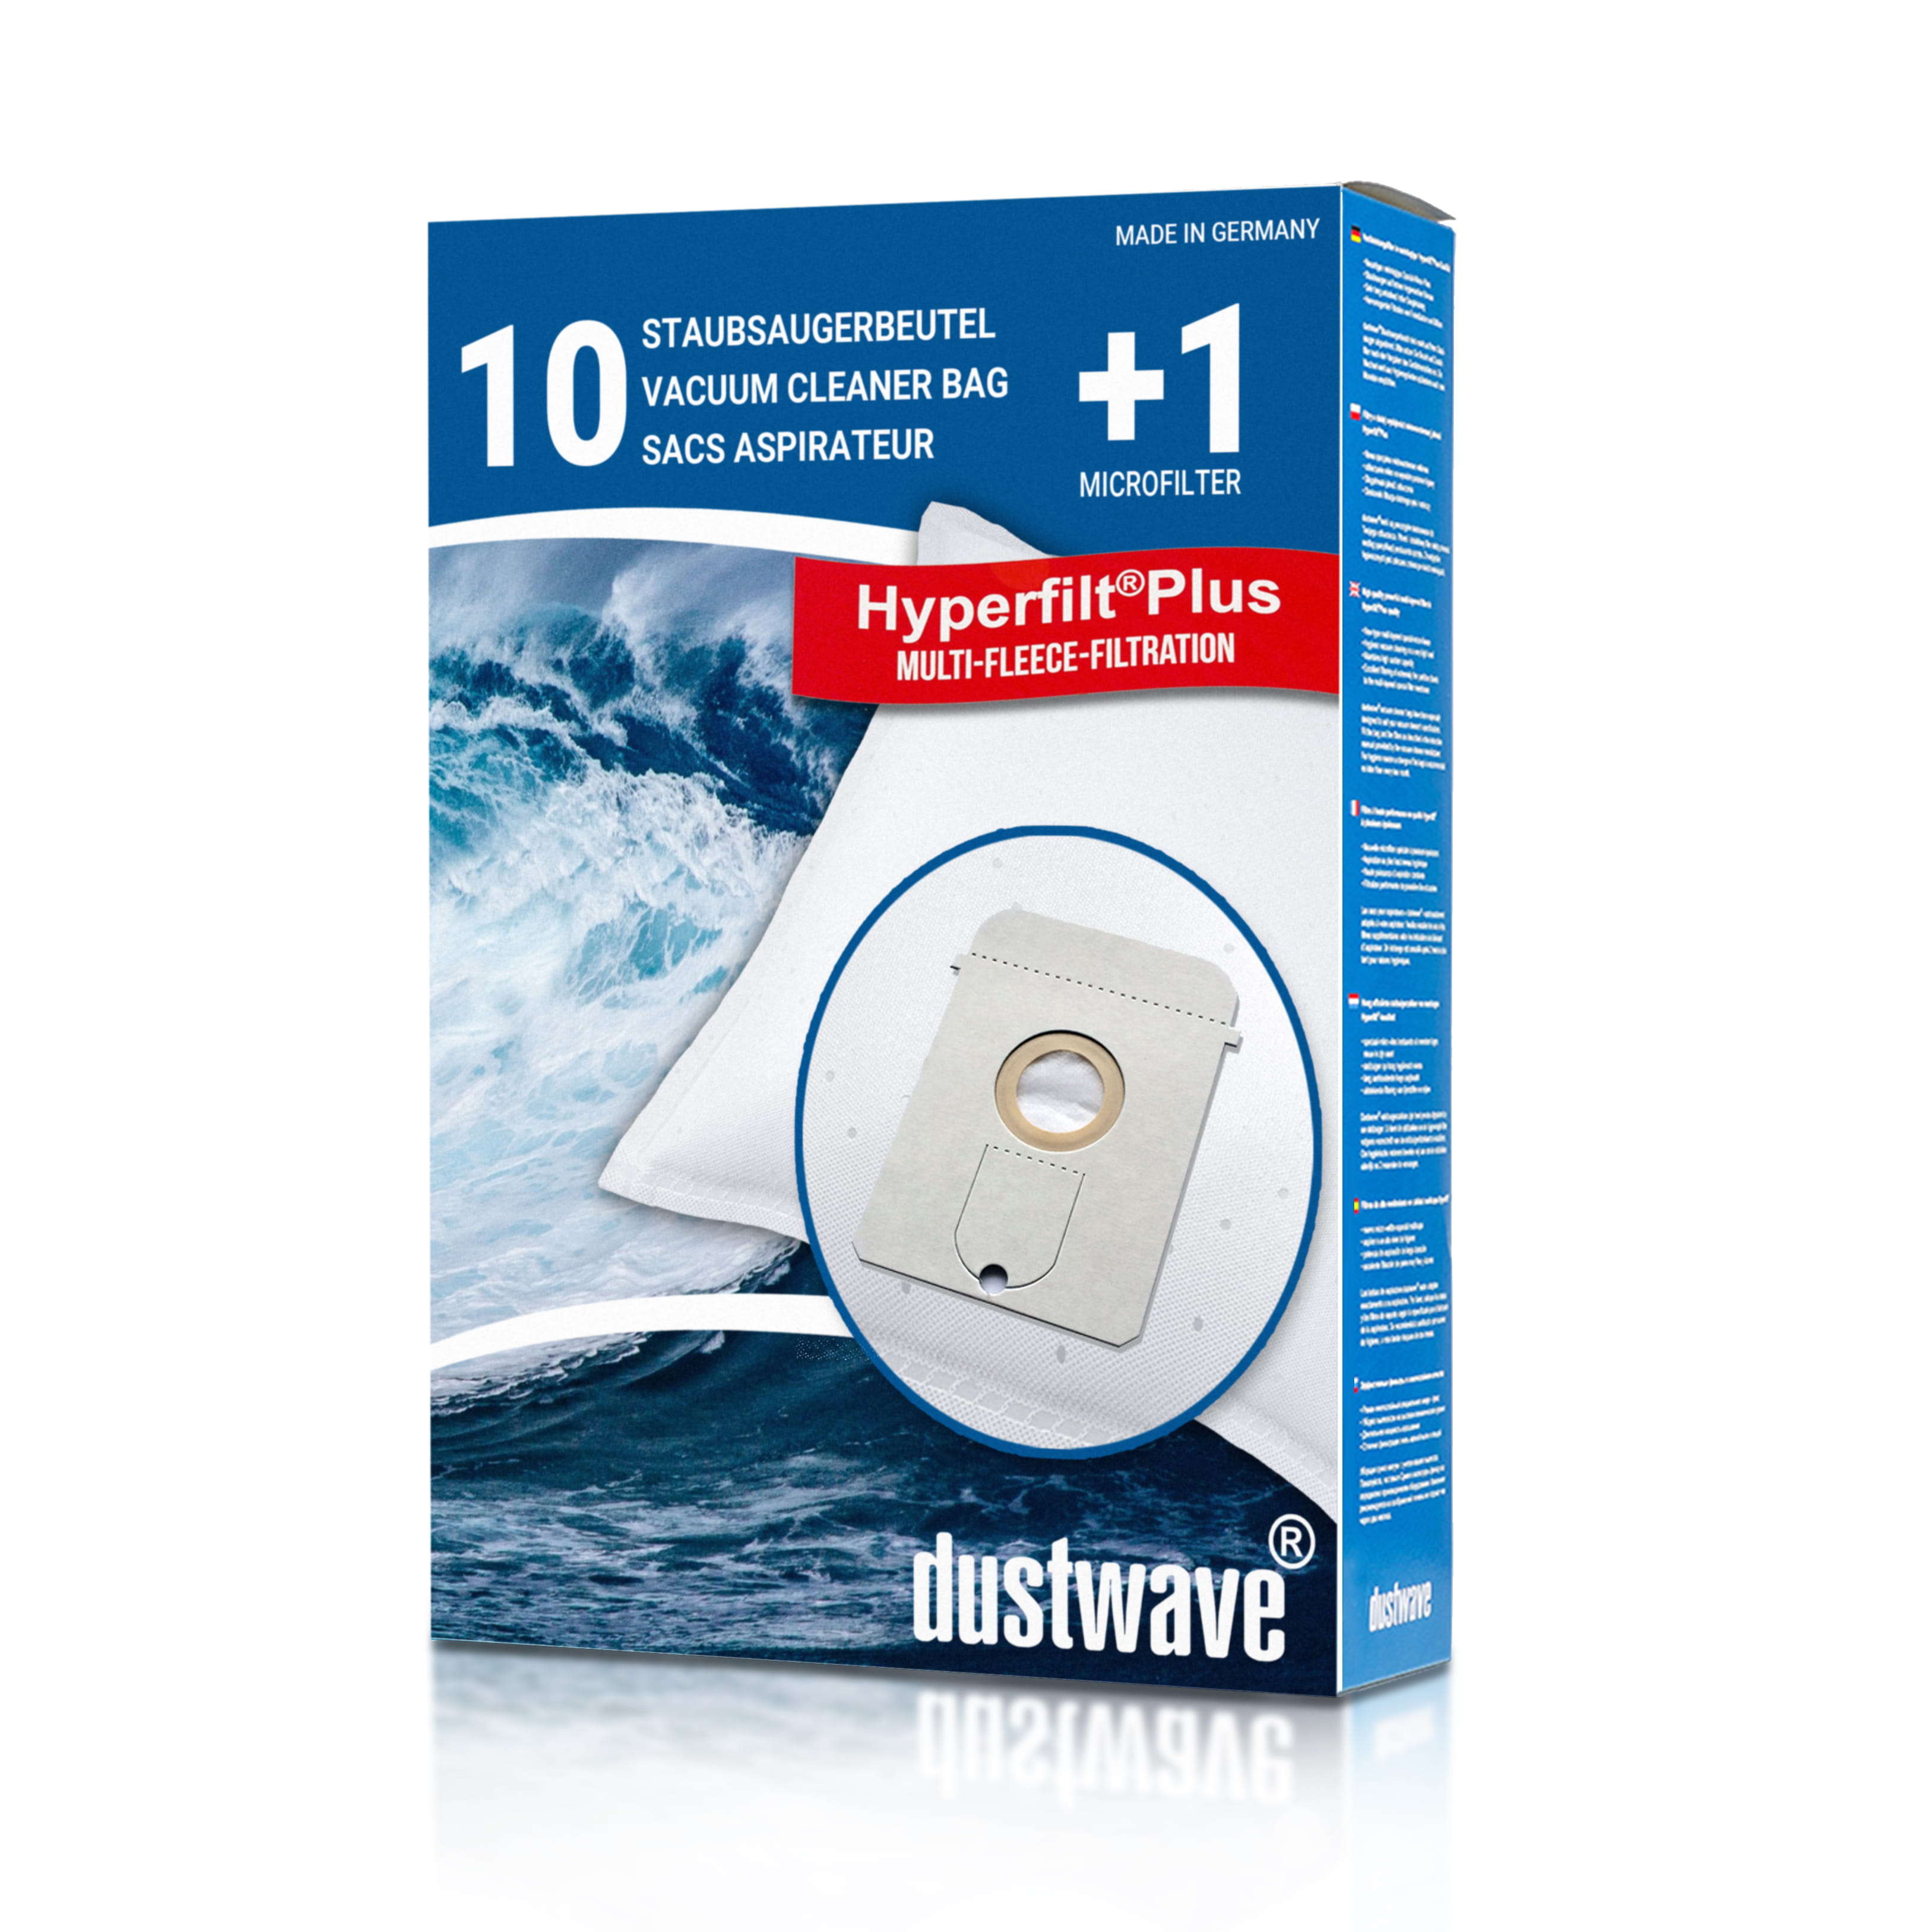 Dustwave® 10 Staubsaugerbeutel für AEG Vampyr TC Universal - hocheffizient, mehrlagiges Mikrovlies mit Hygieneverschluss - Made in Germany